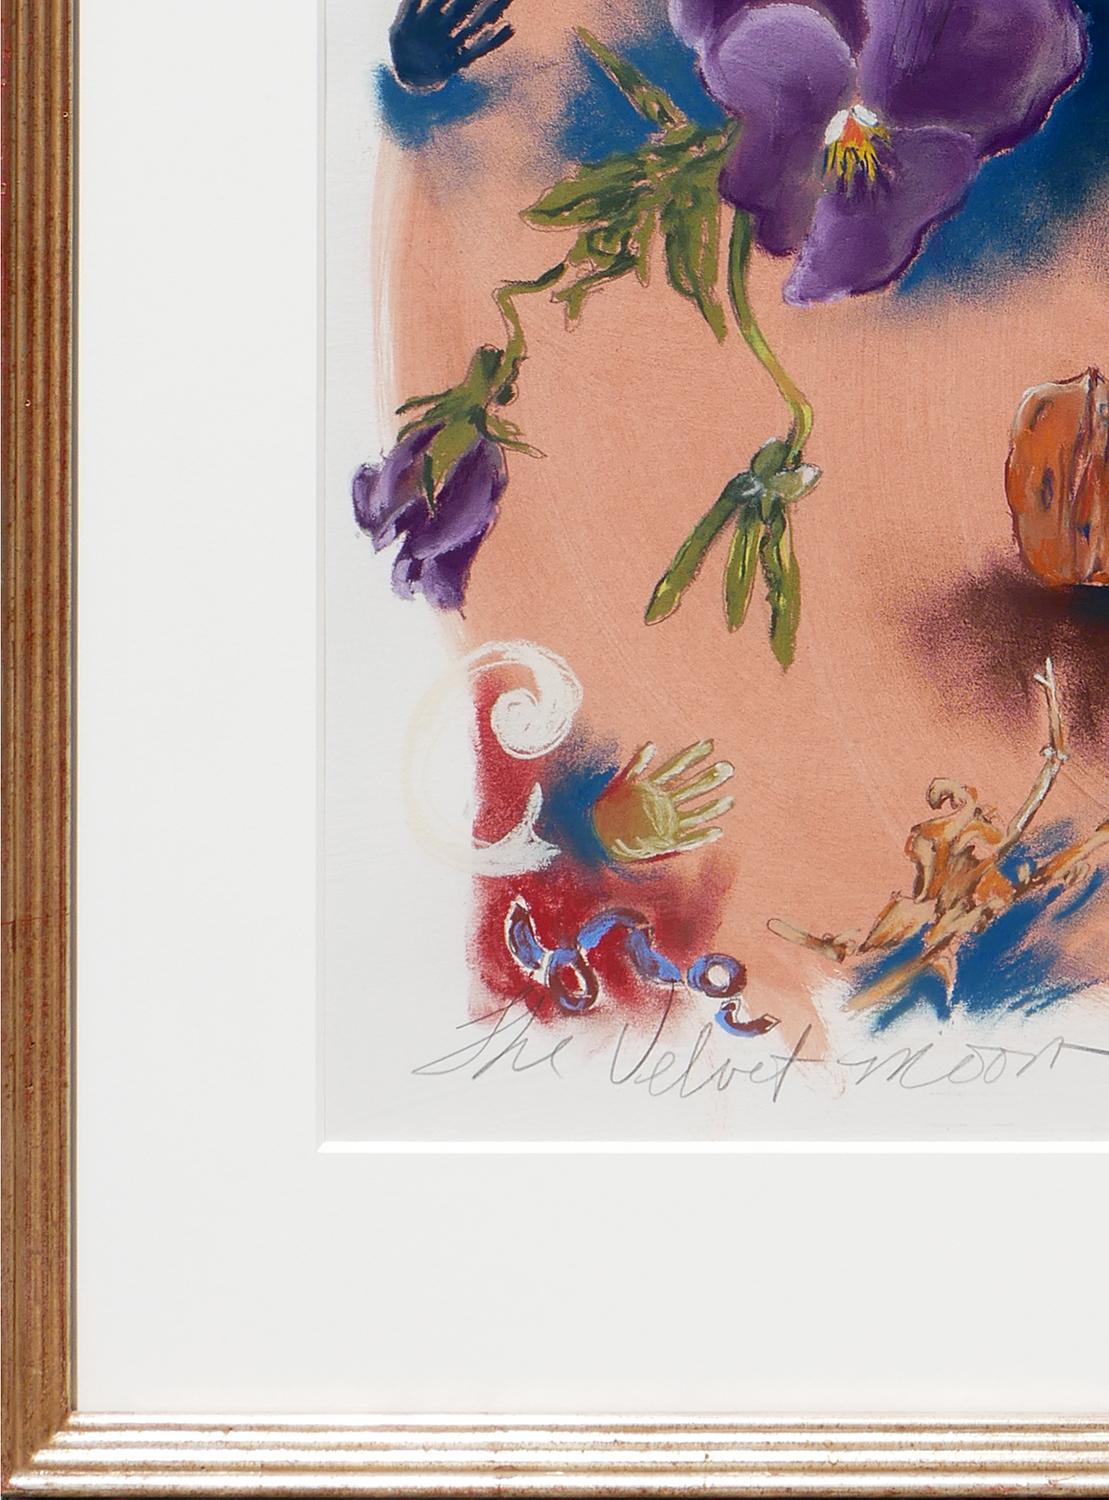 Peinture abstraite de paysages floraux aux couleurs chatoyantes, réalisée par l'artiste contemporaine texane Janice Freeman. La pièce présente une collection de fleurs et de végétaux violets, bleus et verts sur fond de paysage désertique aux tons